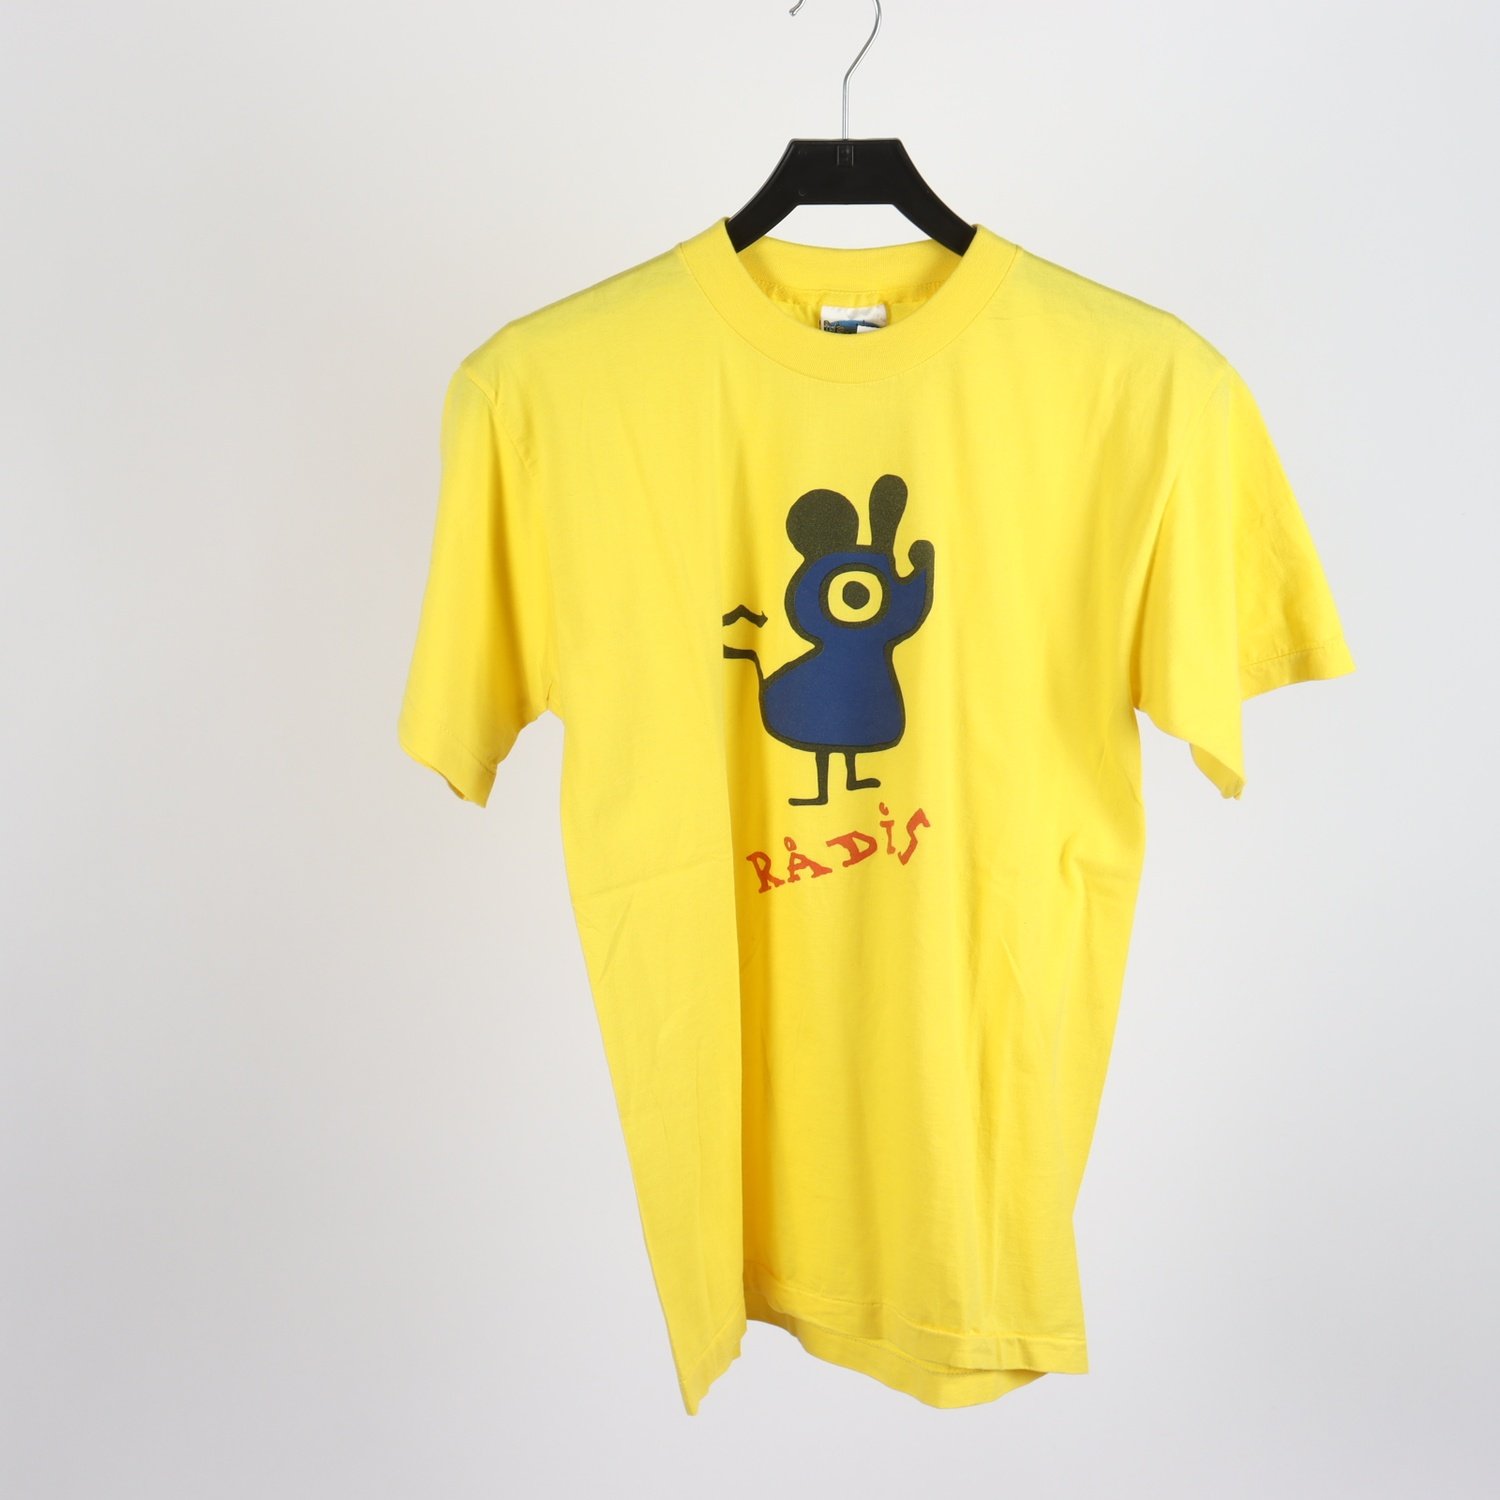 T-shirt, Rådis, gul. stl. S